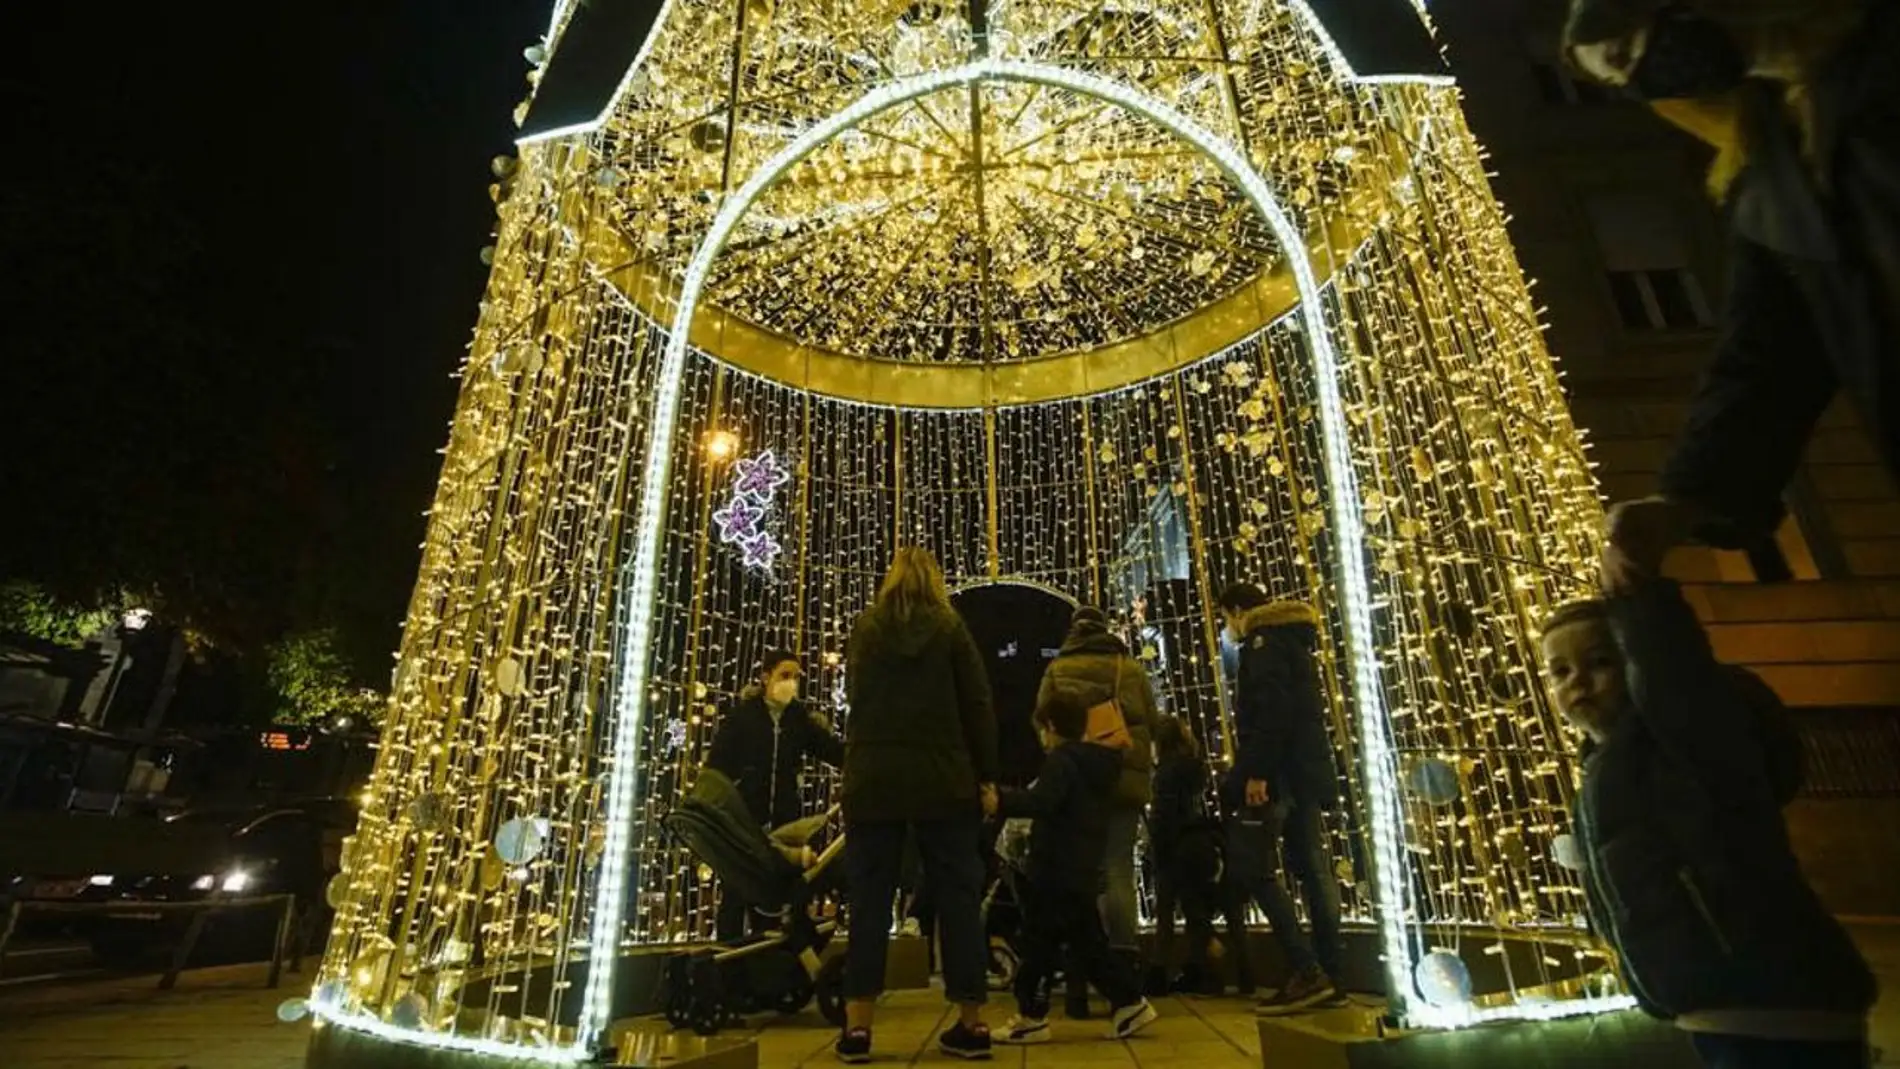 A iluminación artística de Nadal continuará engalanando as rúas da cidade até o domingo